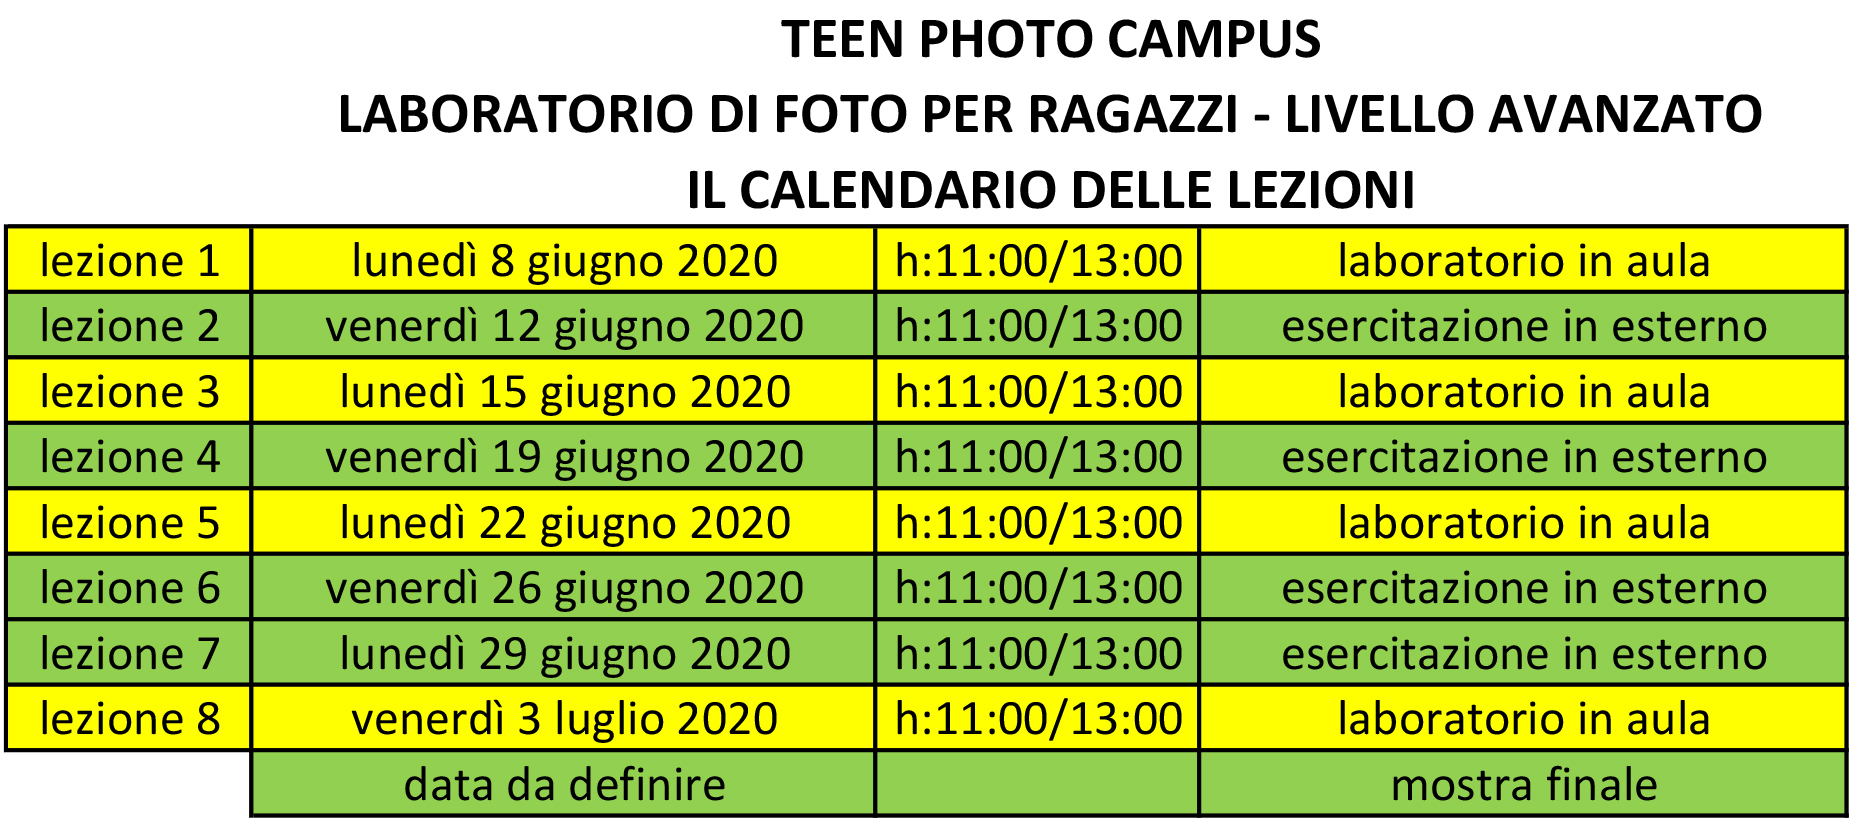 Teen Photo Campus - il calendario con le lezioni